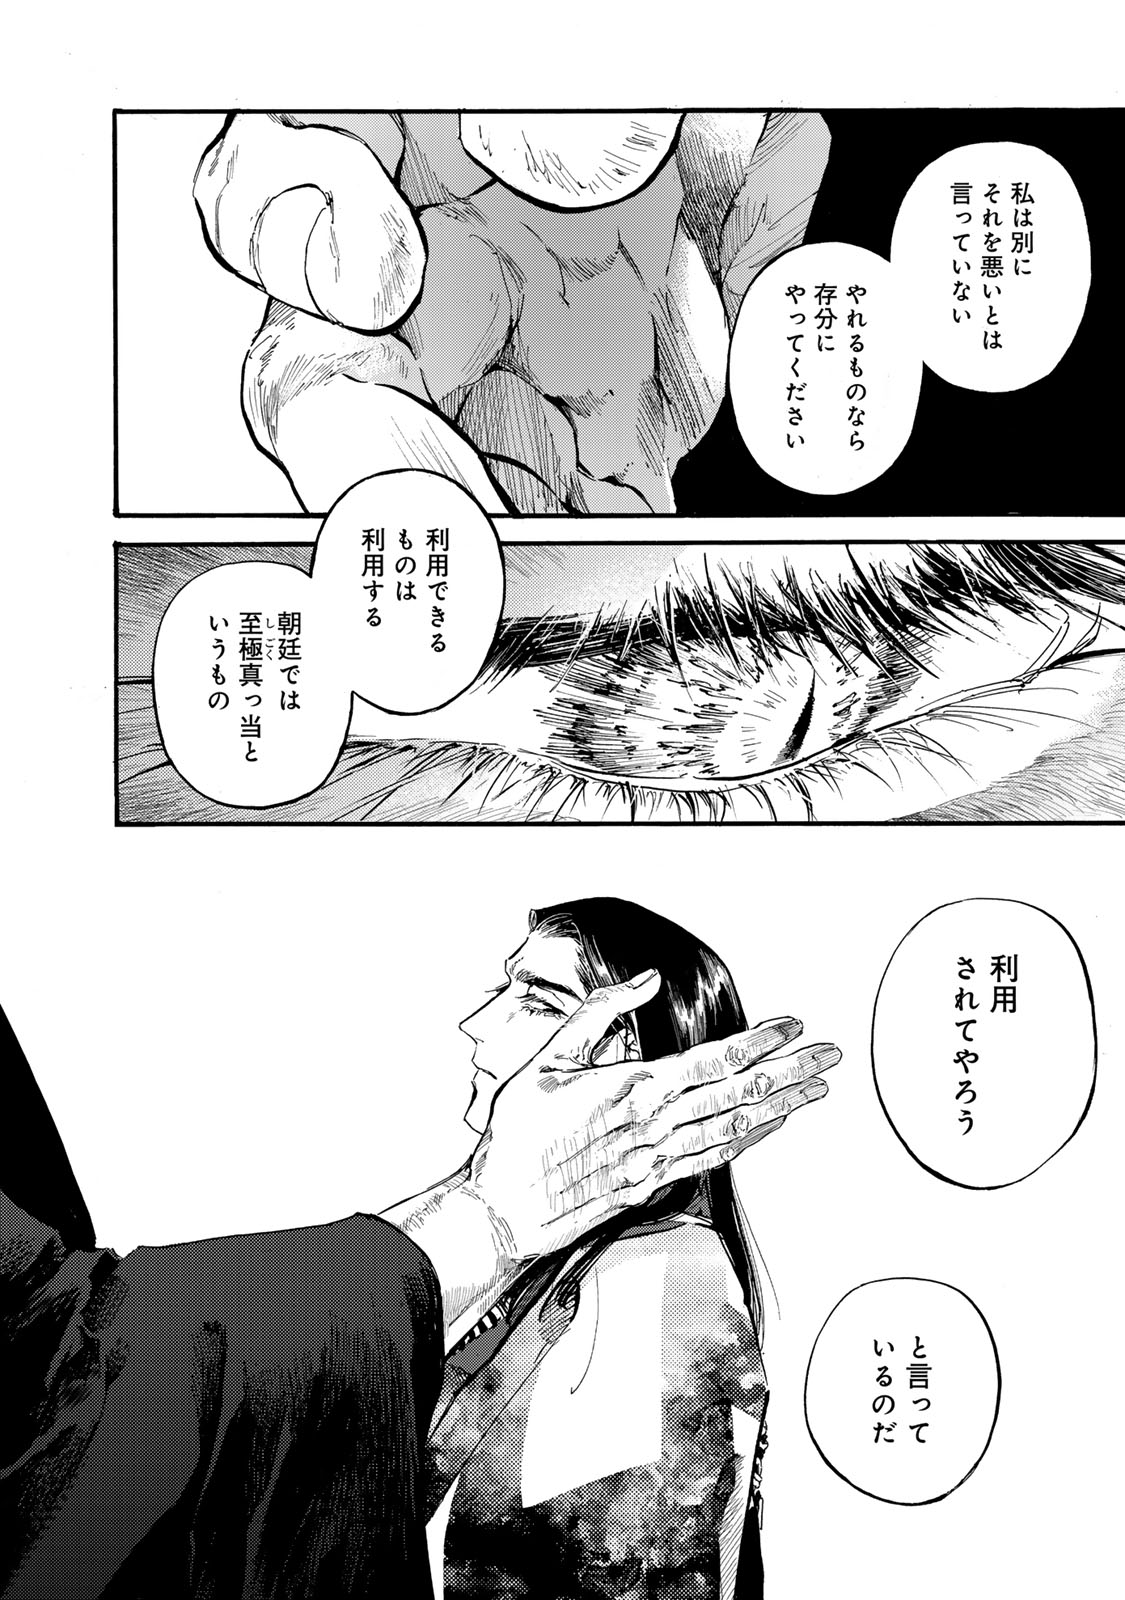 Karasu wa Aruji wo Erabanai - Chapter 39 - Page 6